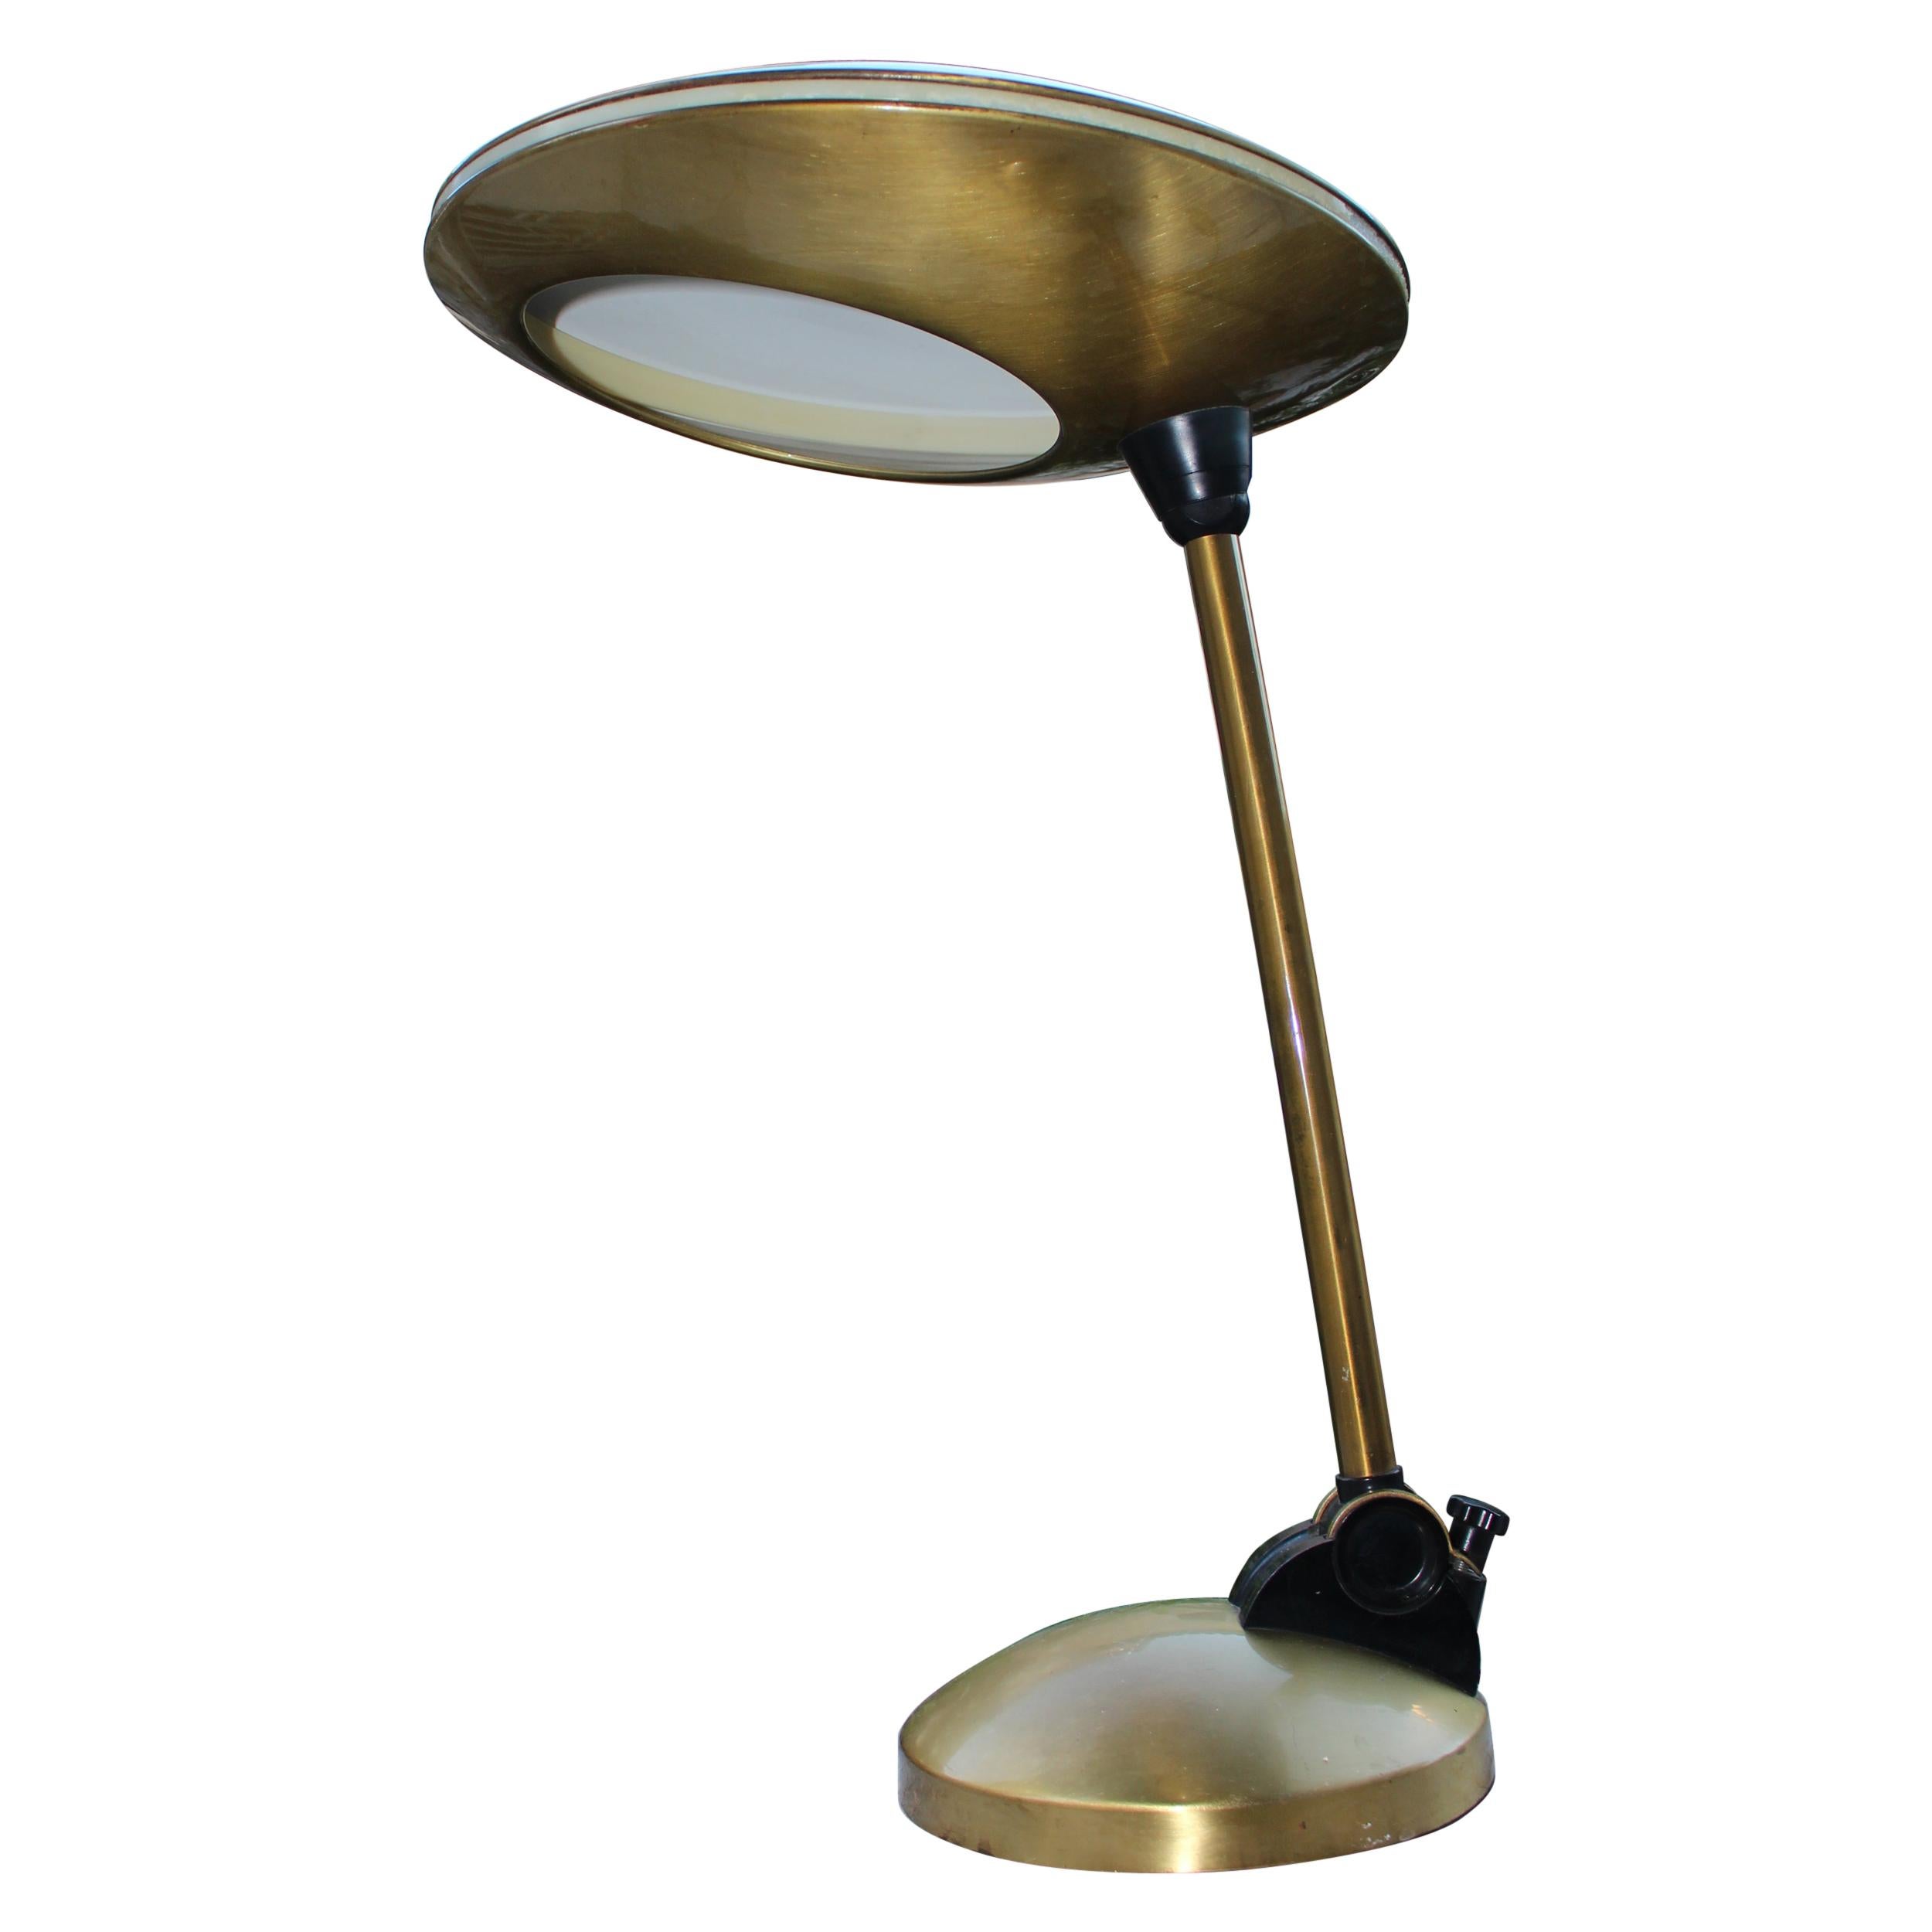 Italian Brass Desk Lamp in Style of Fontana Arte